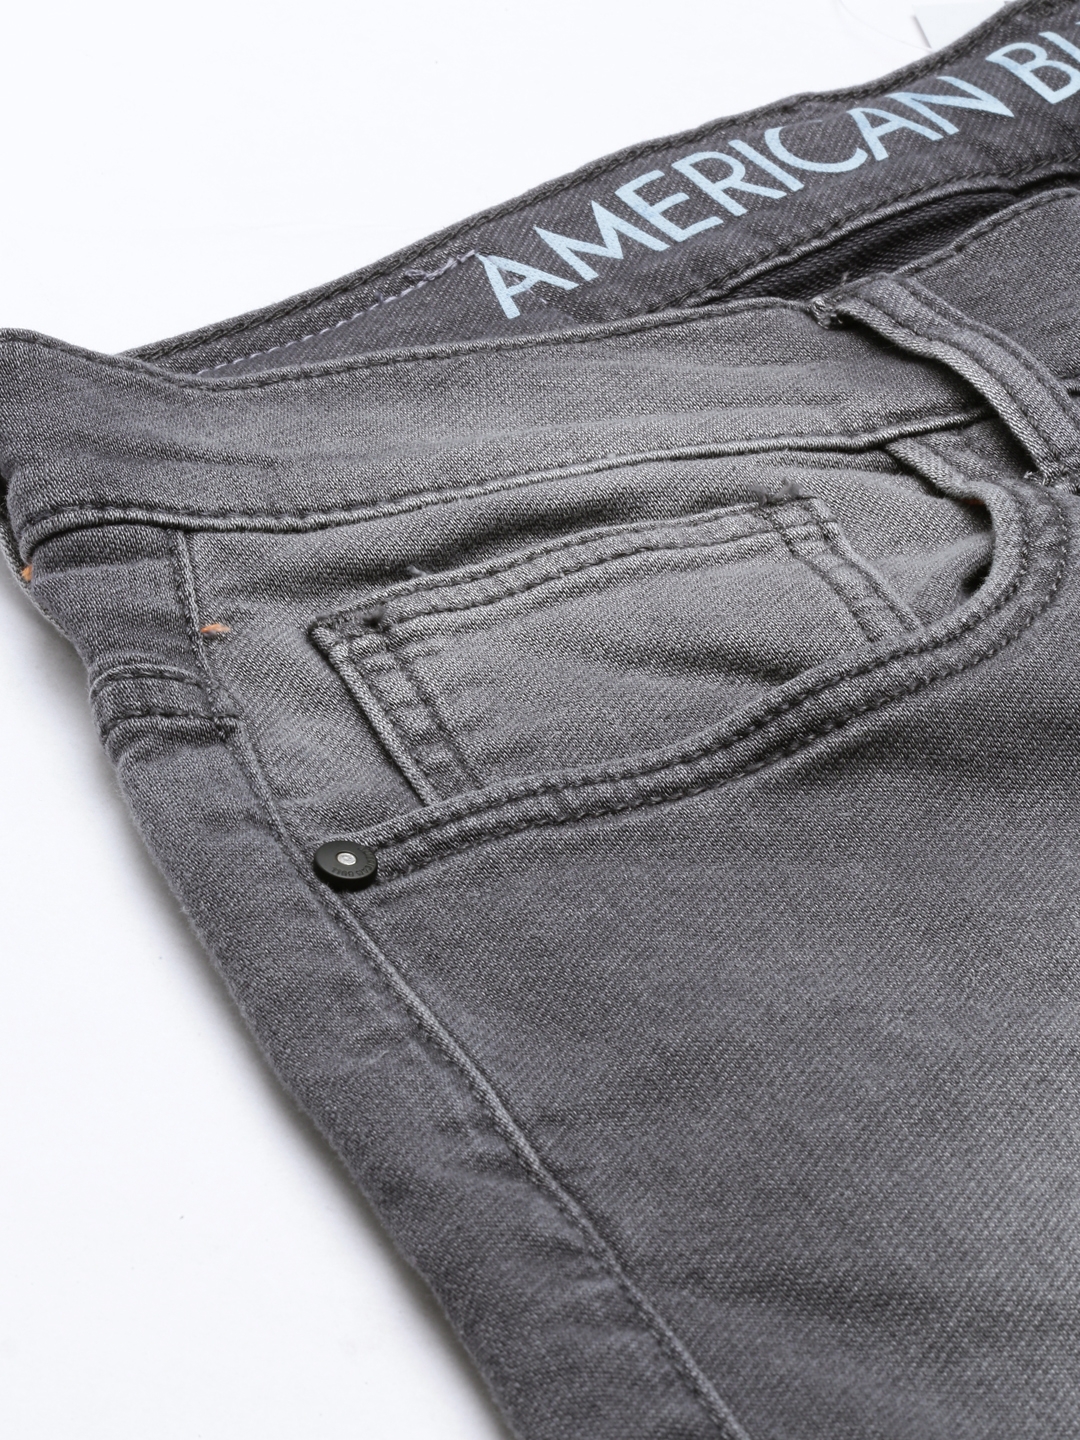 American Bull Mens Denim Jeans